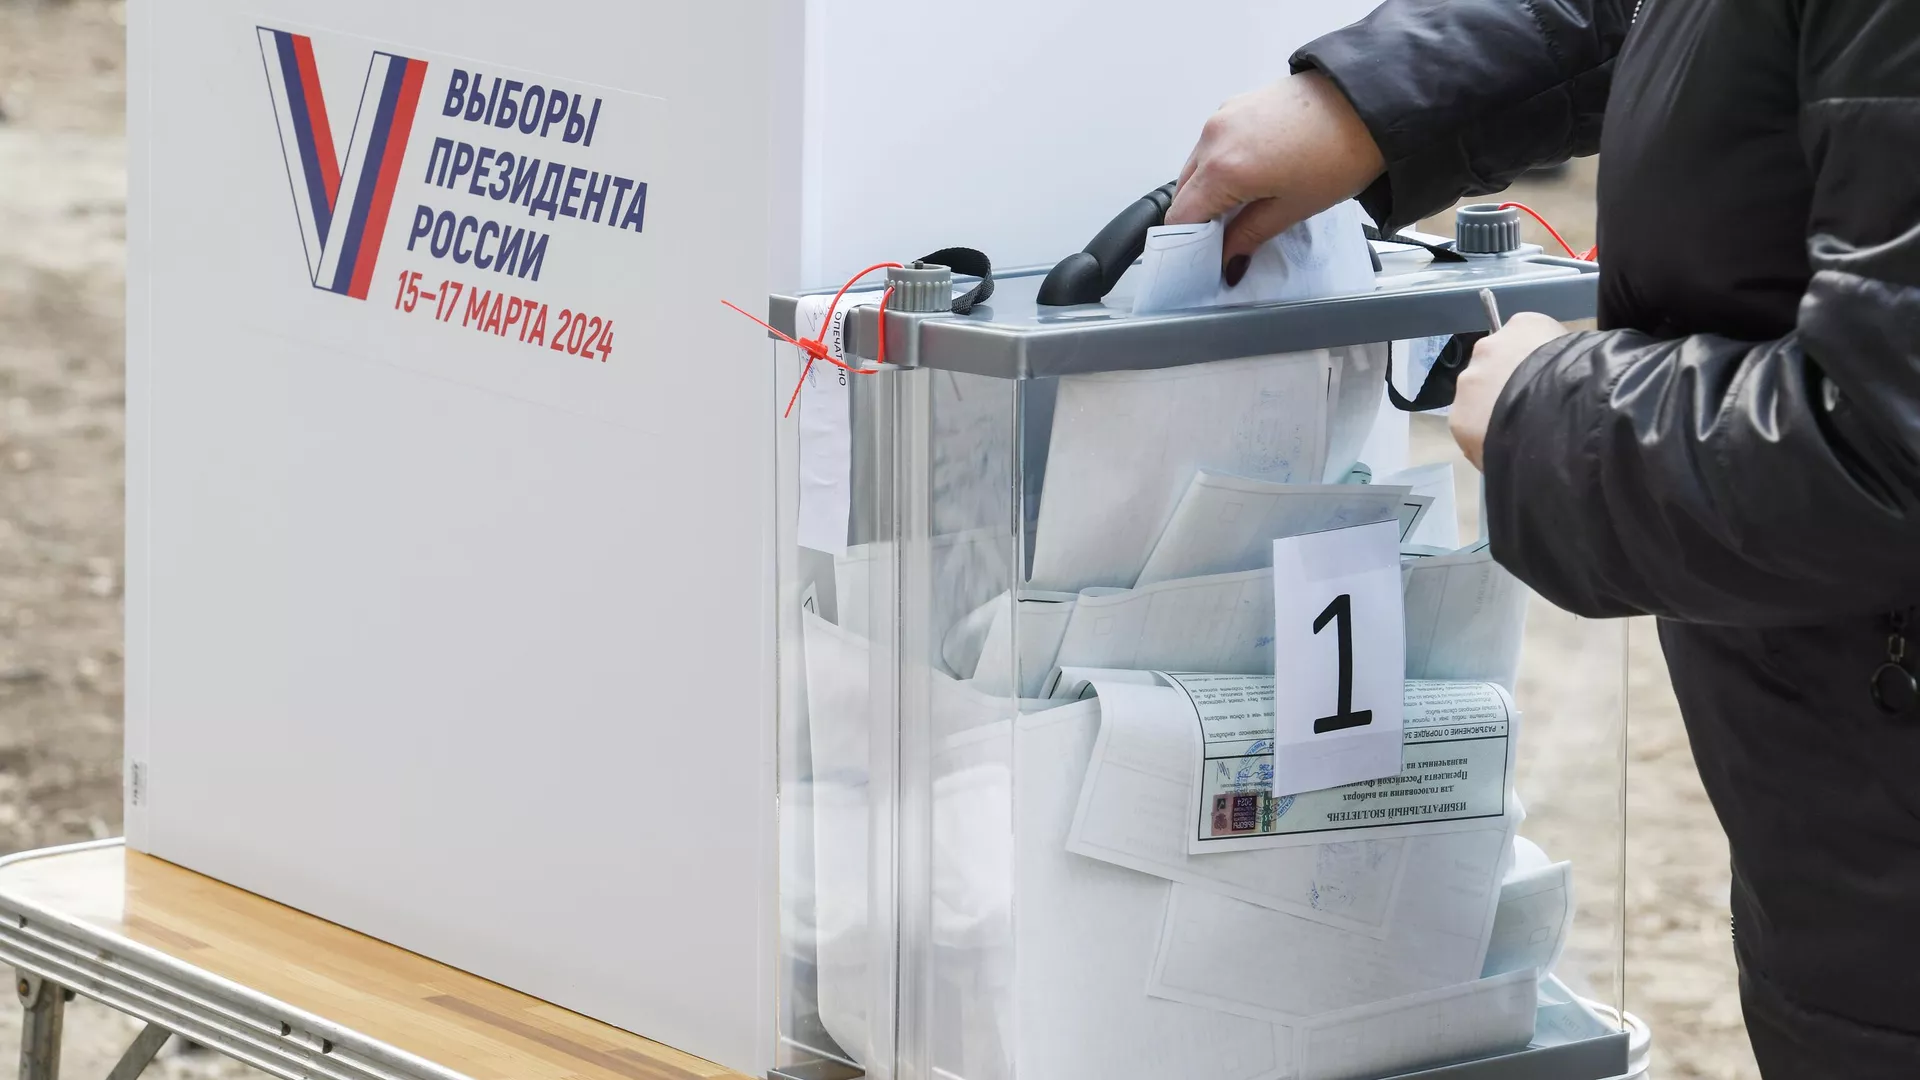 ЦИК РФ: Предварительные результаты выборов станут известны 18 марта